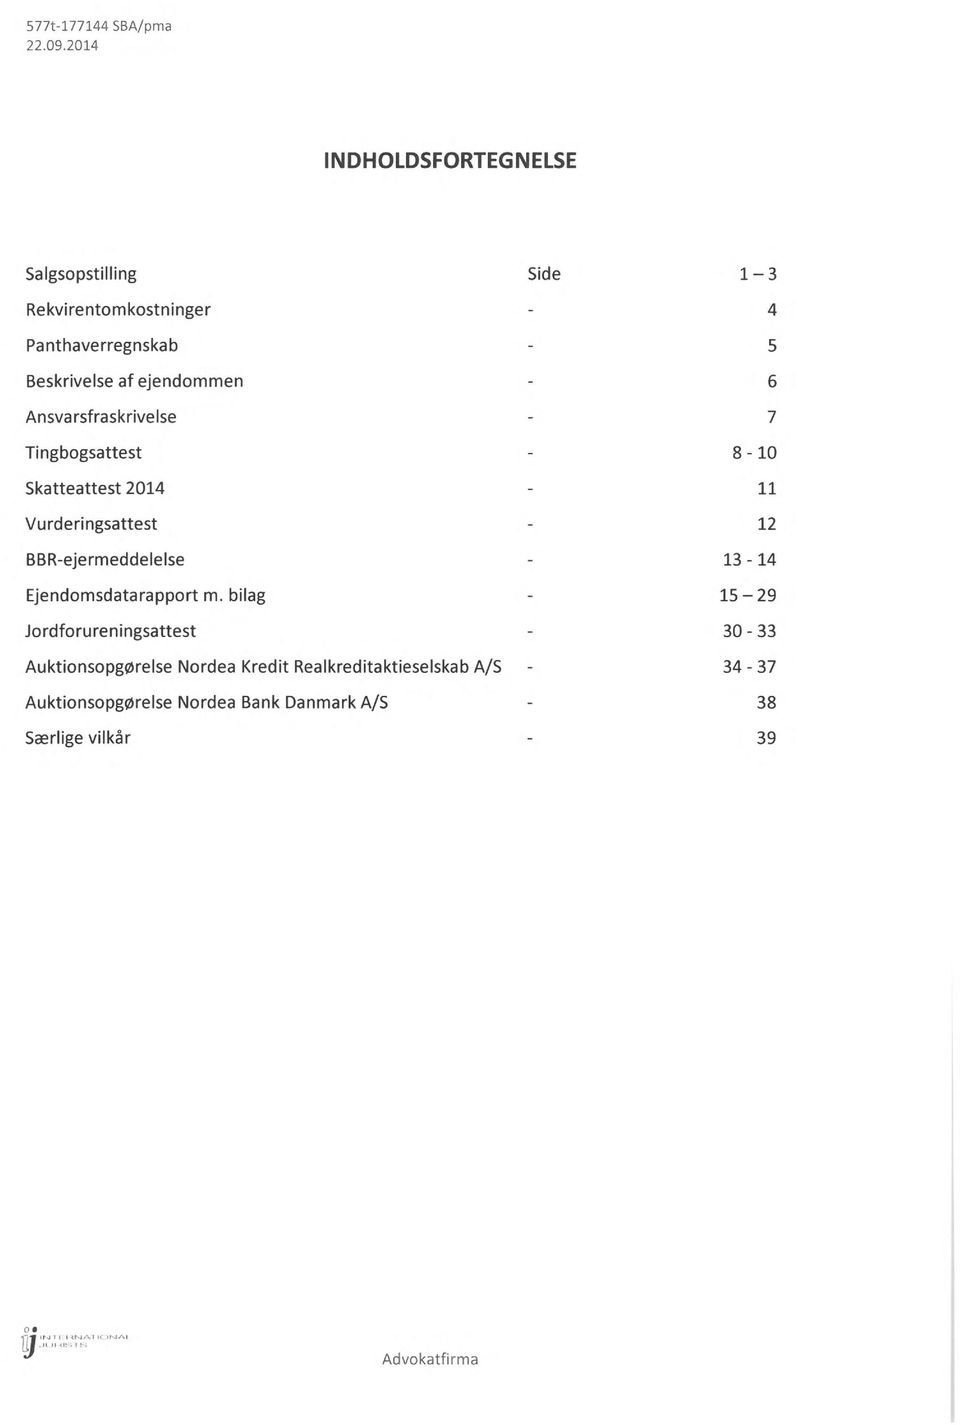 Ansvarsfraskrivelse Tingbogsattest Skatteattest 2014 Vurderingsattest BBR-ejermeddelelse Ejendomsdatarapport m.